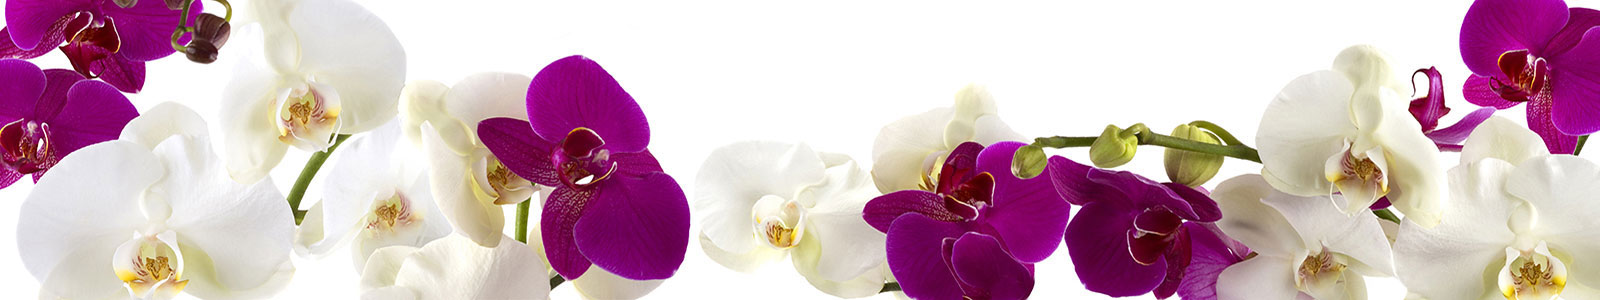 №1793 - Белые и фиолетовые орхидеи